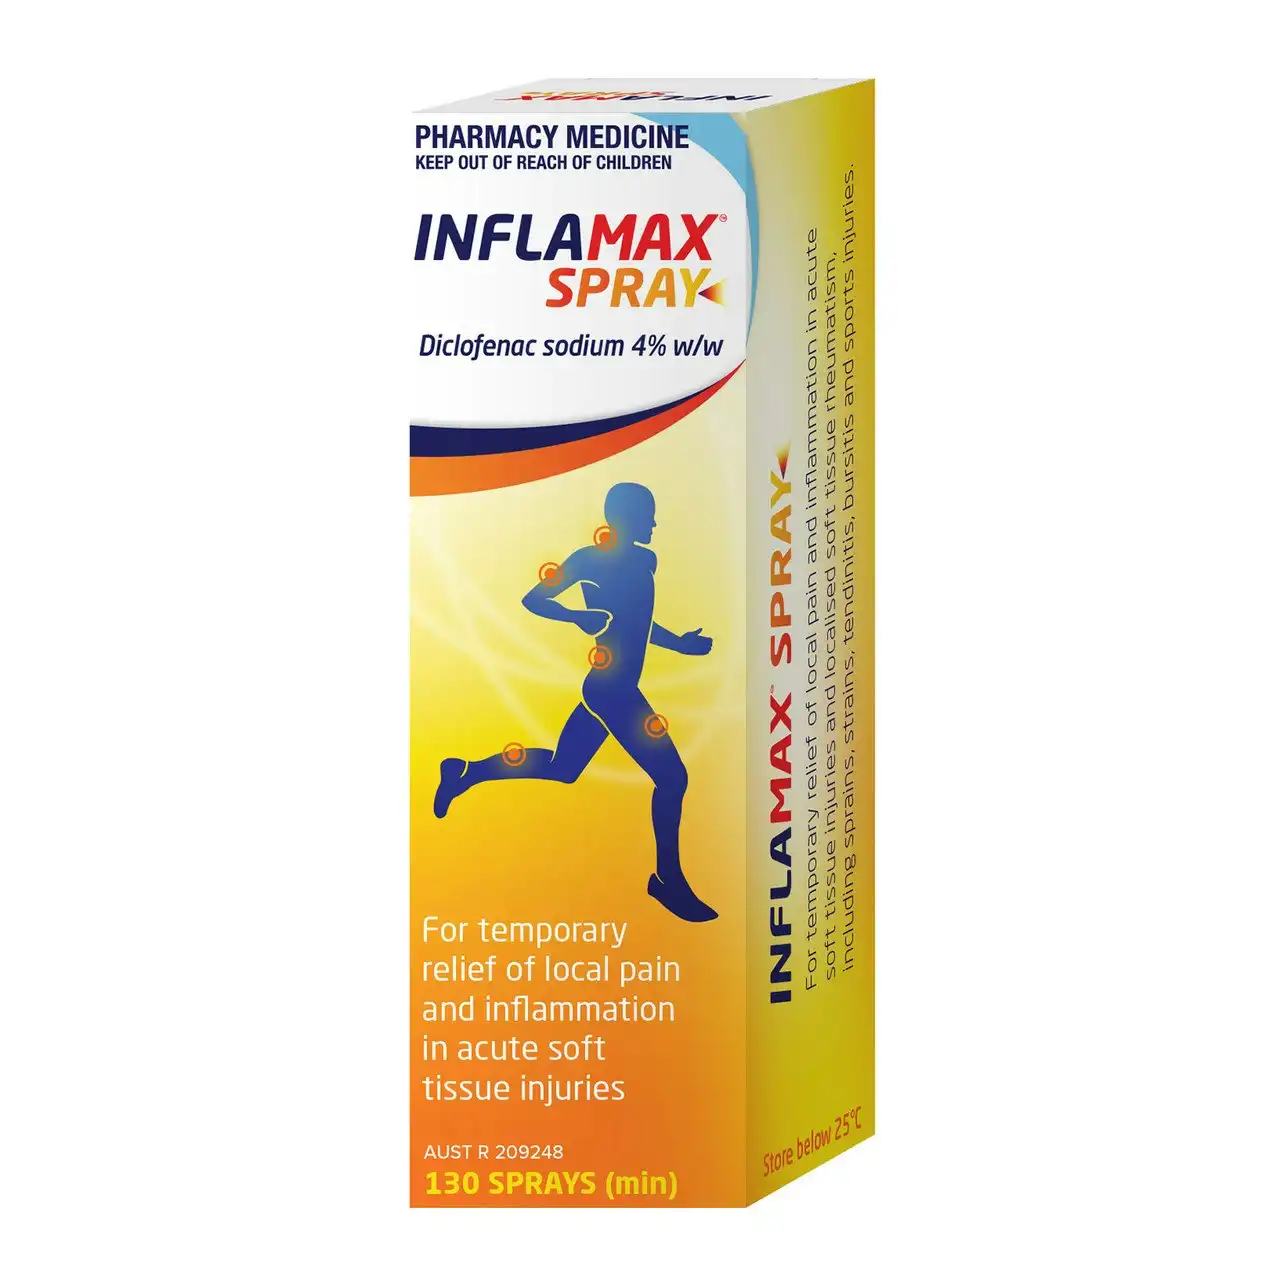 Inflamax Spray 30mL - Diclofenac 4%